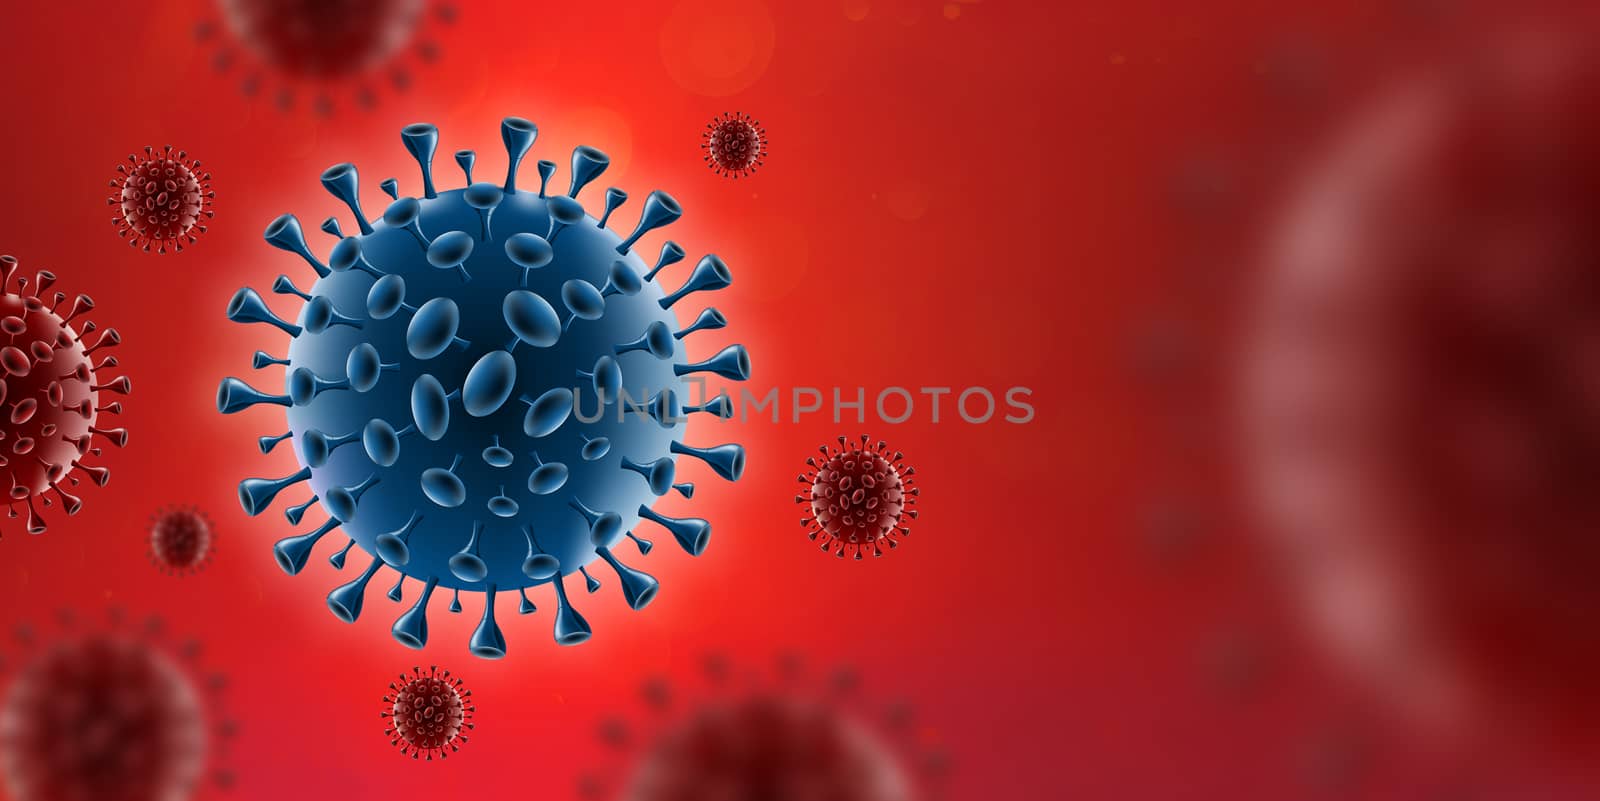 Covid-19 Coronavirus virus in red blood